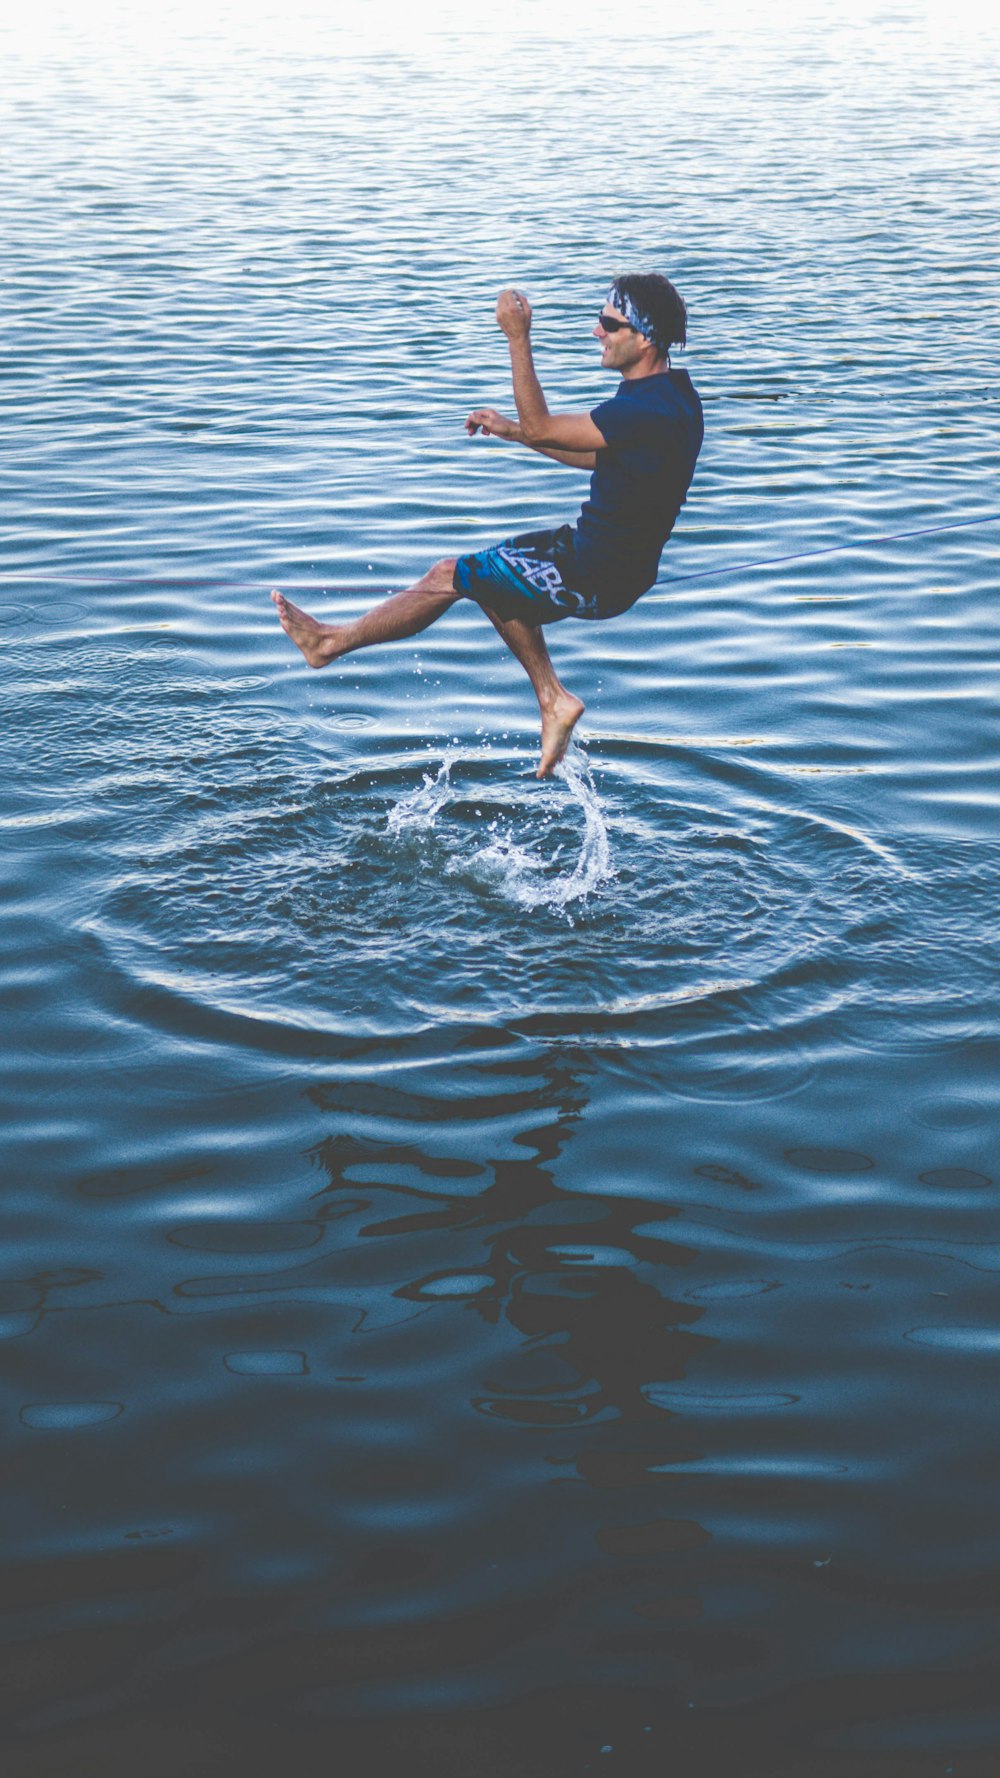 물 위에 있는 남자의 패닝 사진